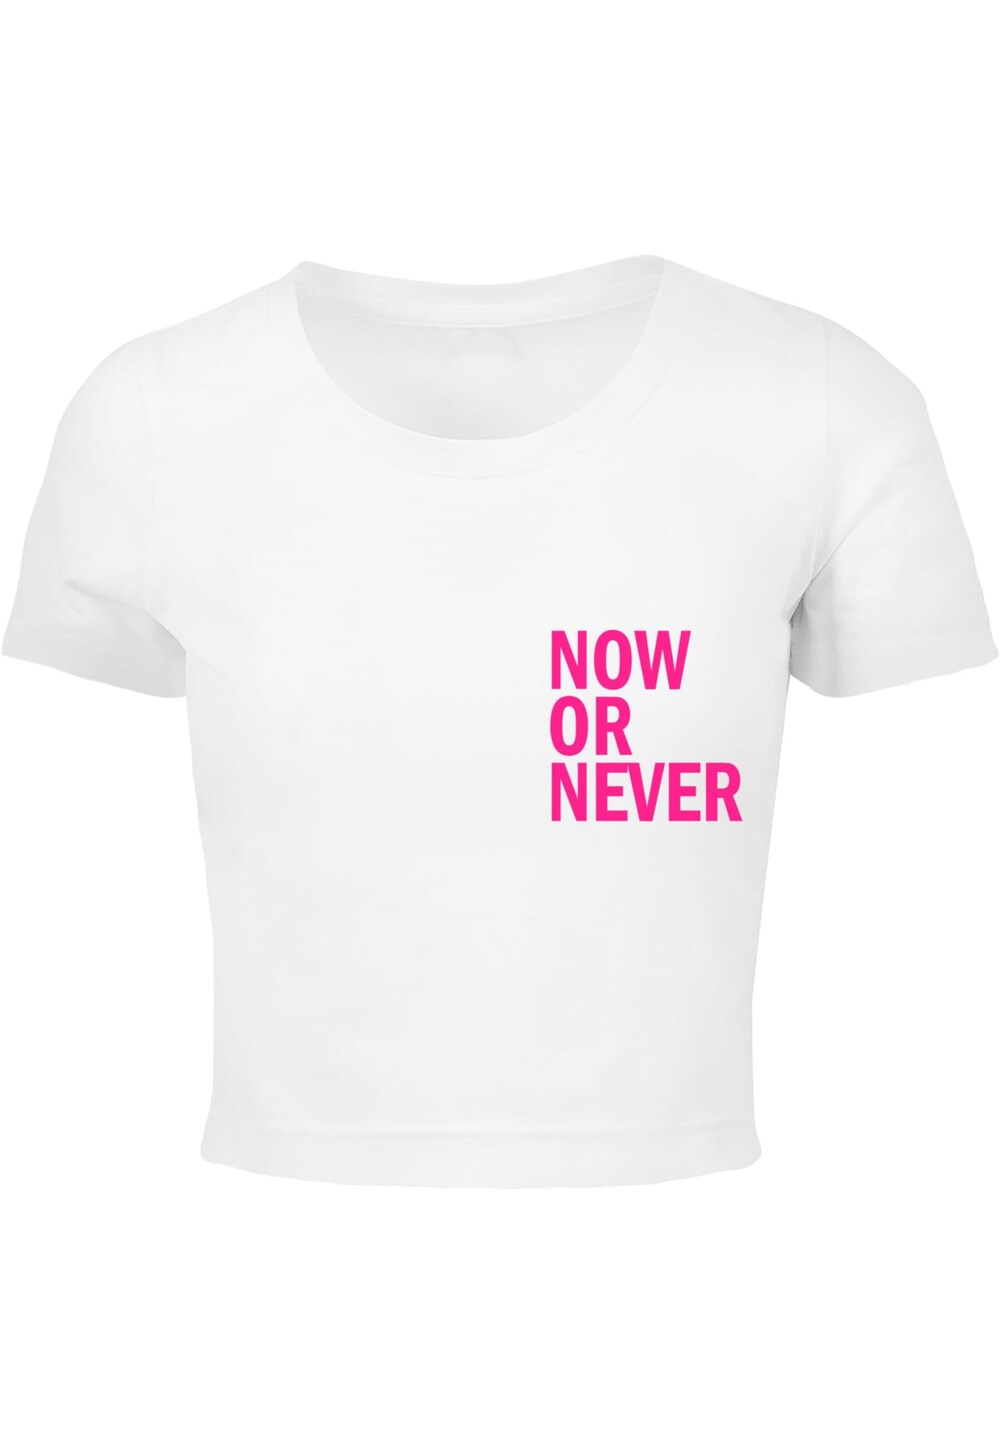 Рубашка Merchcode Now Or Never, белый now or never